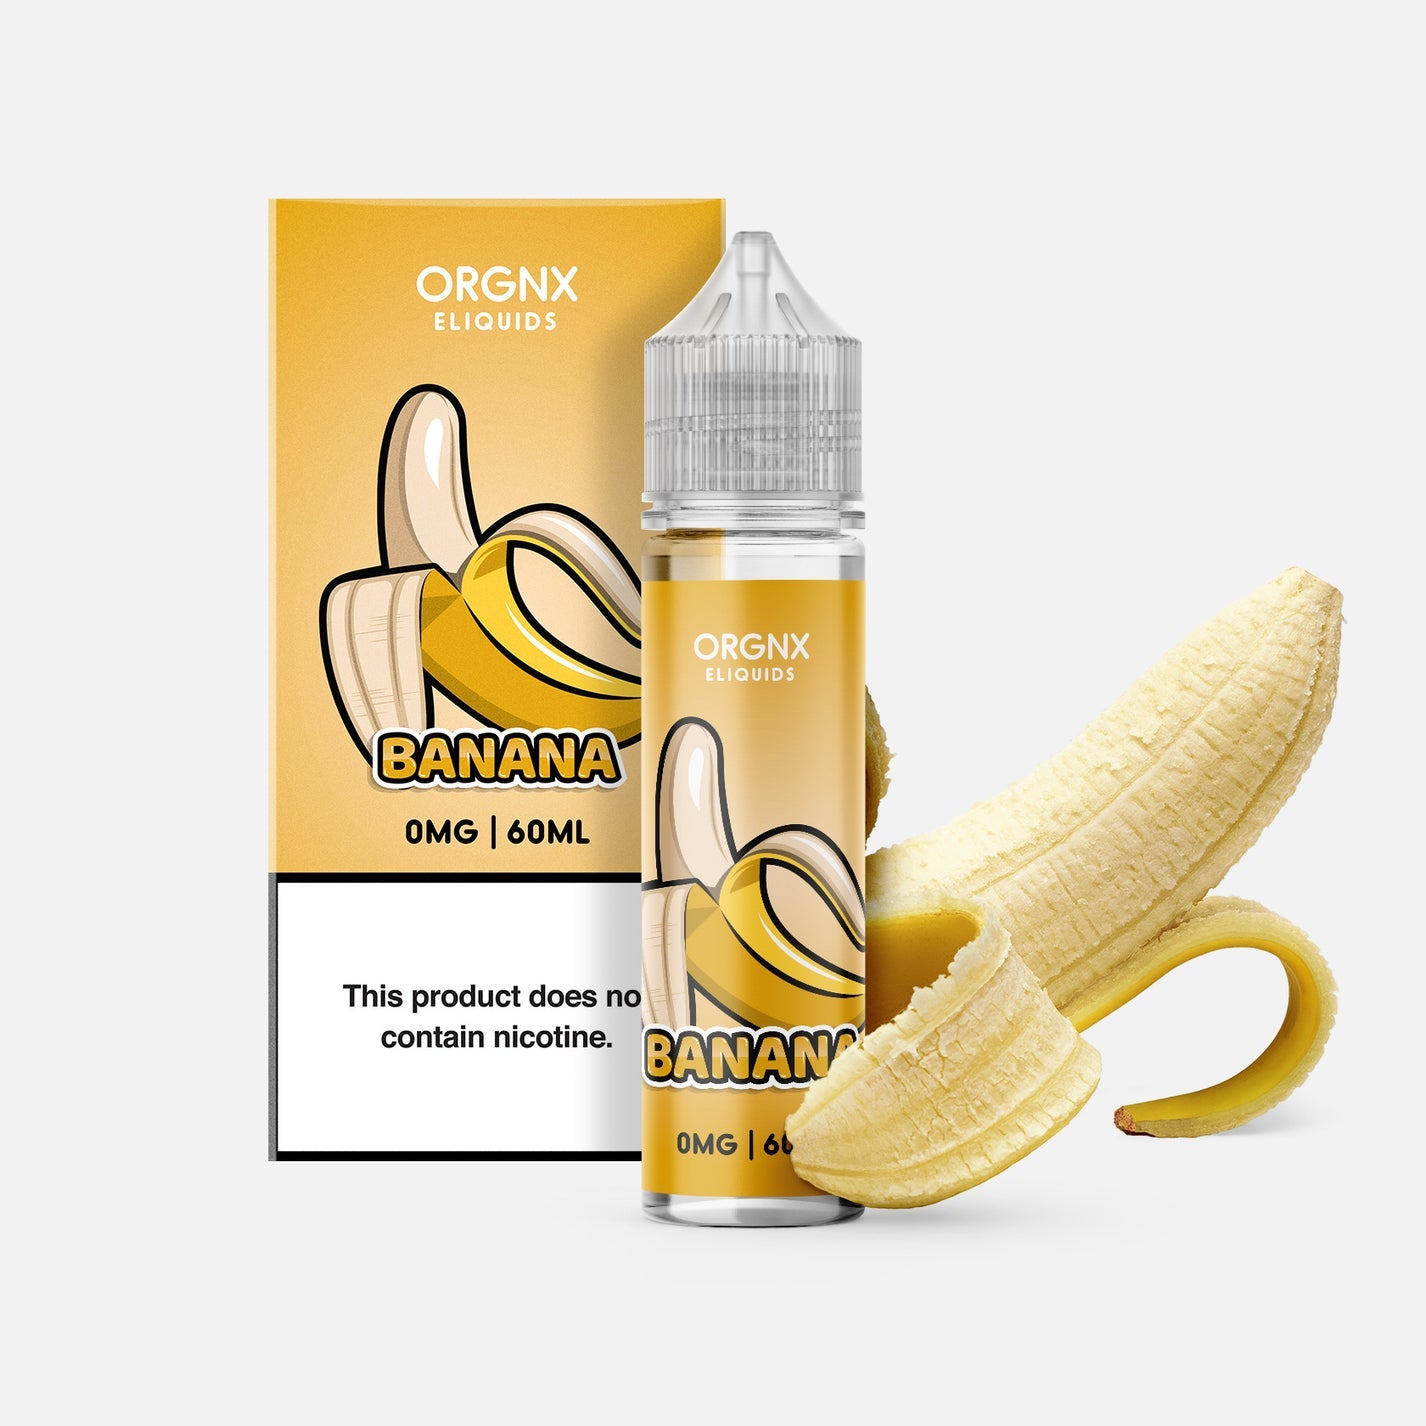 ORGNX: Banana